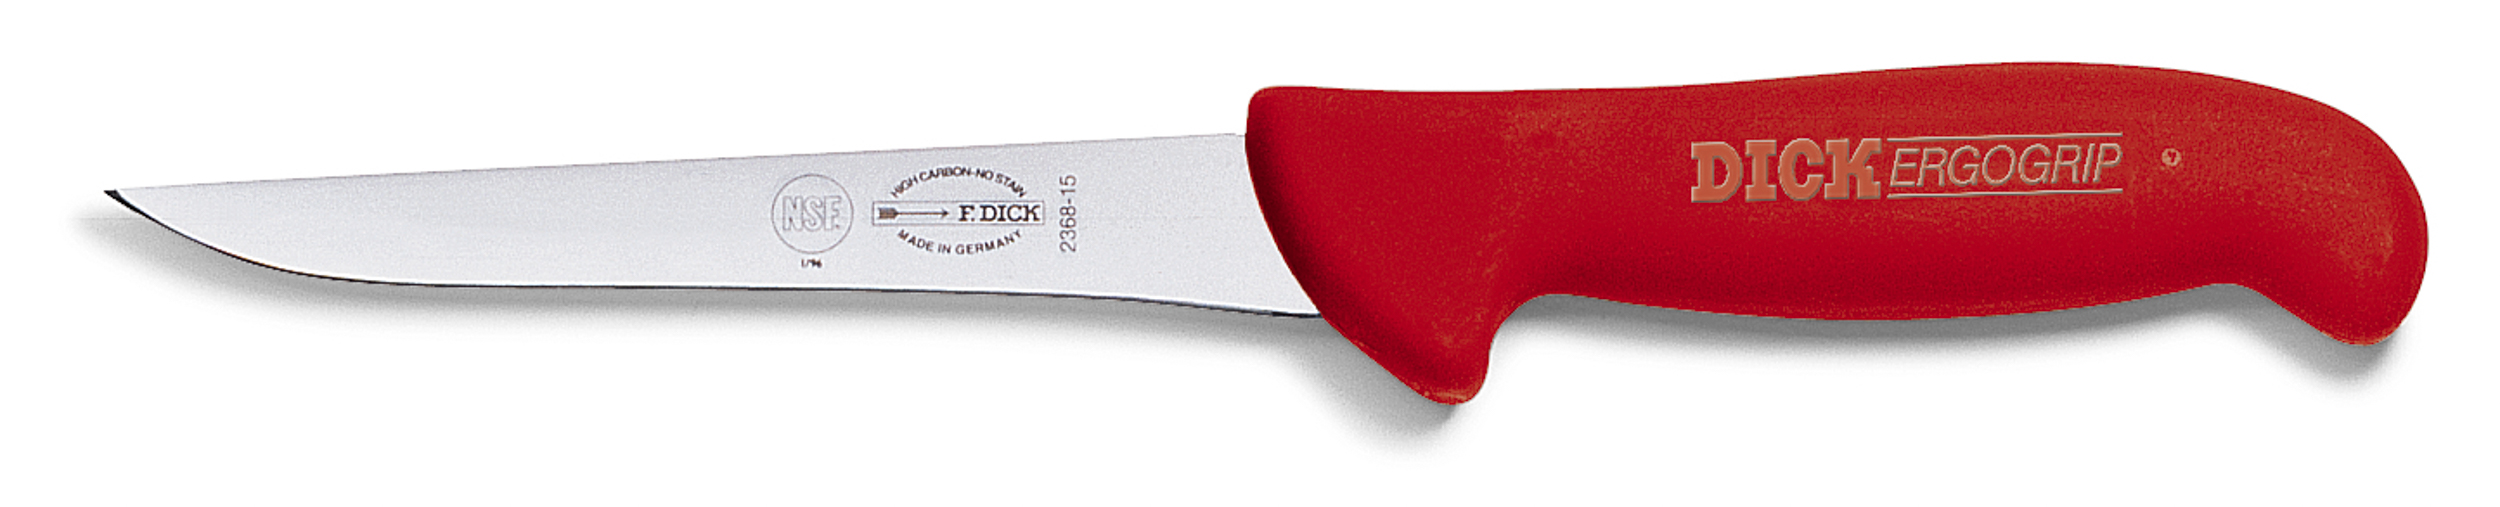 Dick Ausbeinmesser 15 cm, steif mit schmaler Klinge und rotem Griff, Serie "Ergogrip"